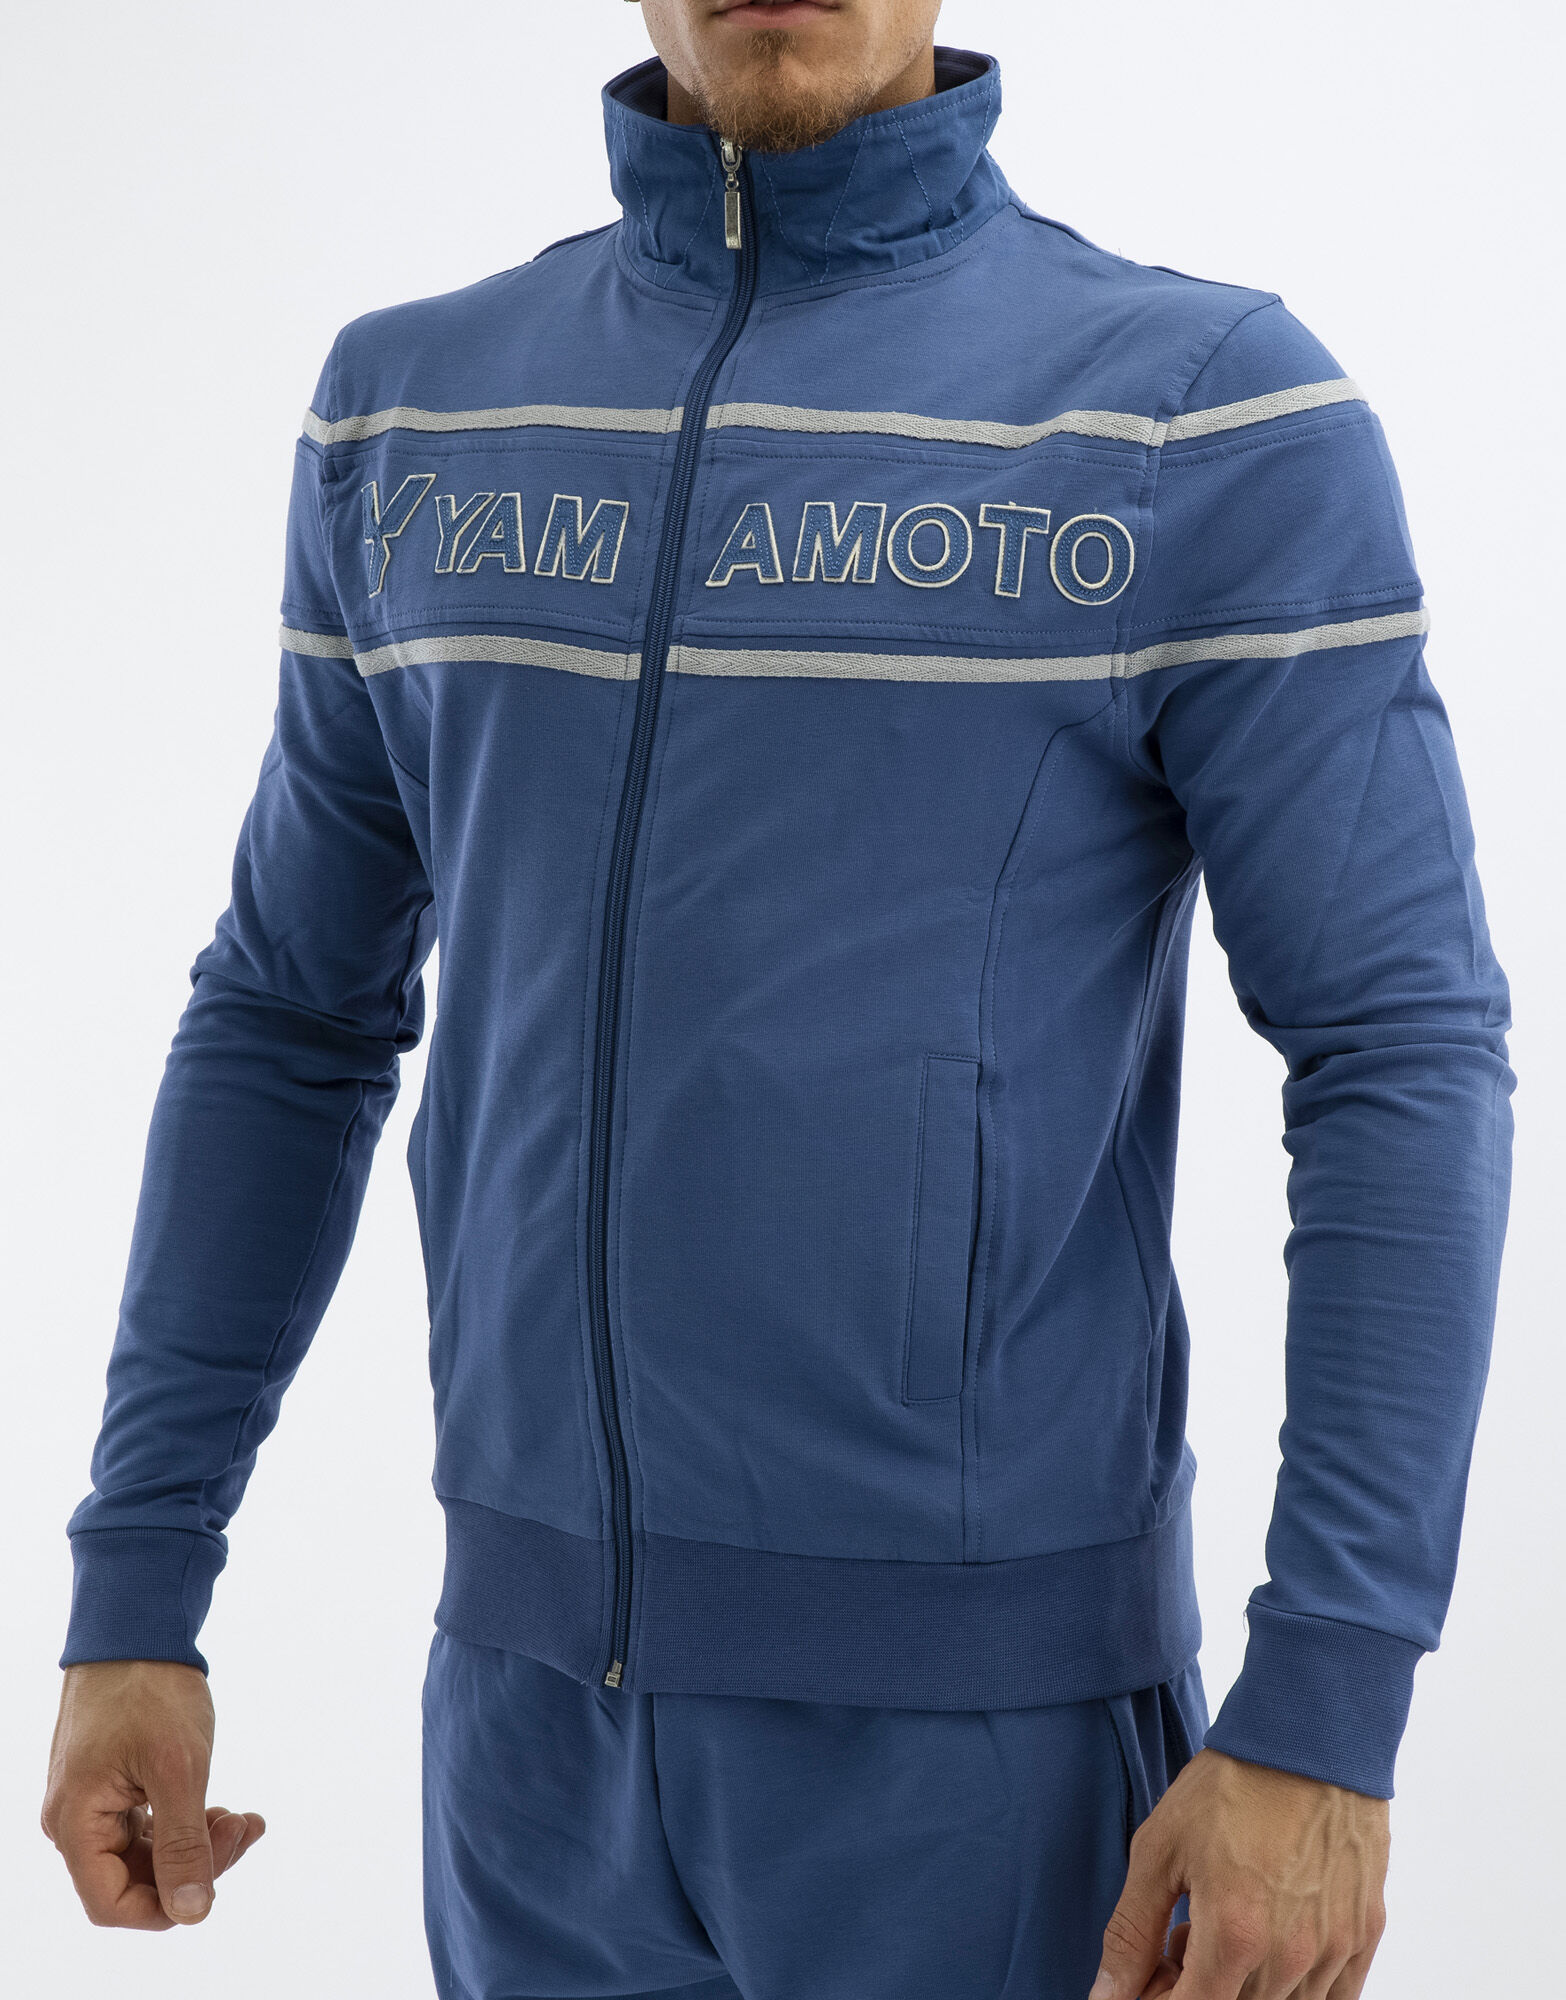 YAMAMOTO OUTFIT Man Sweatshirt Navy Xxl